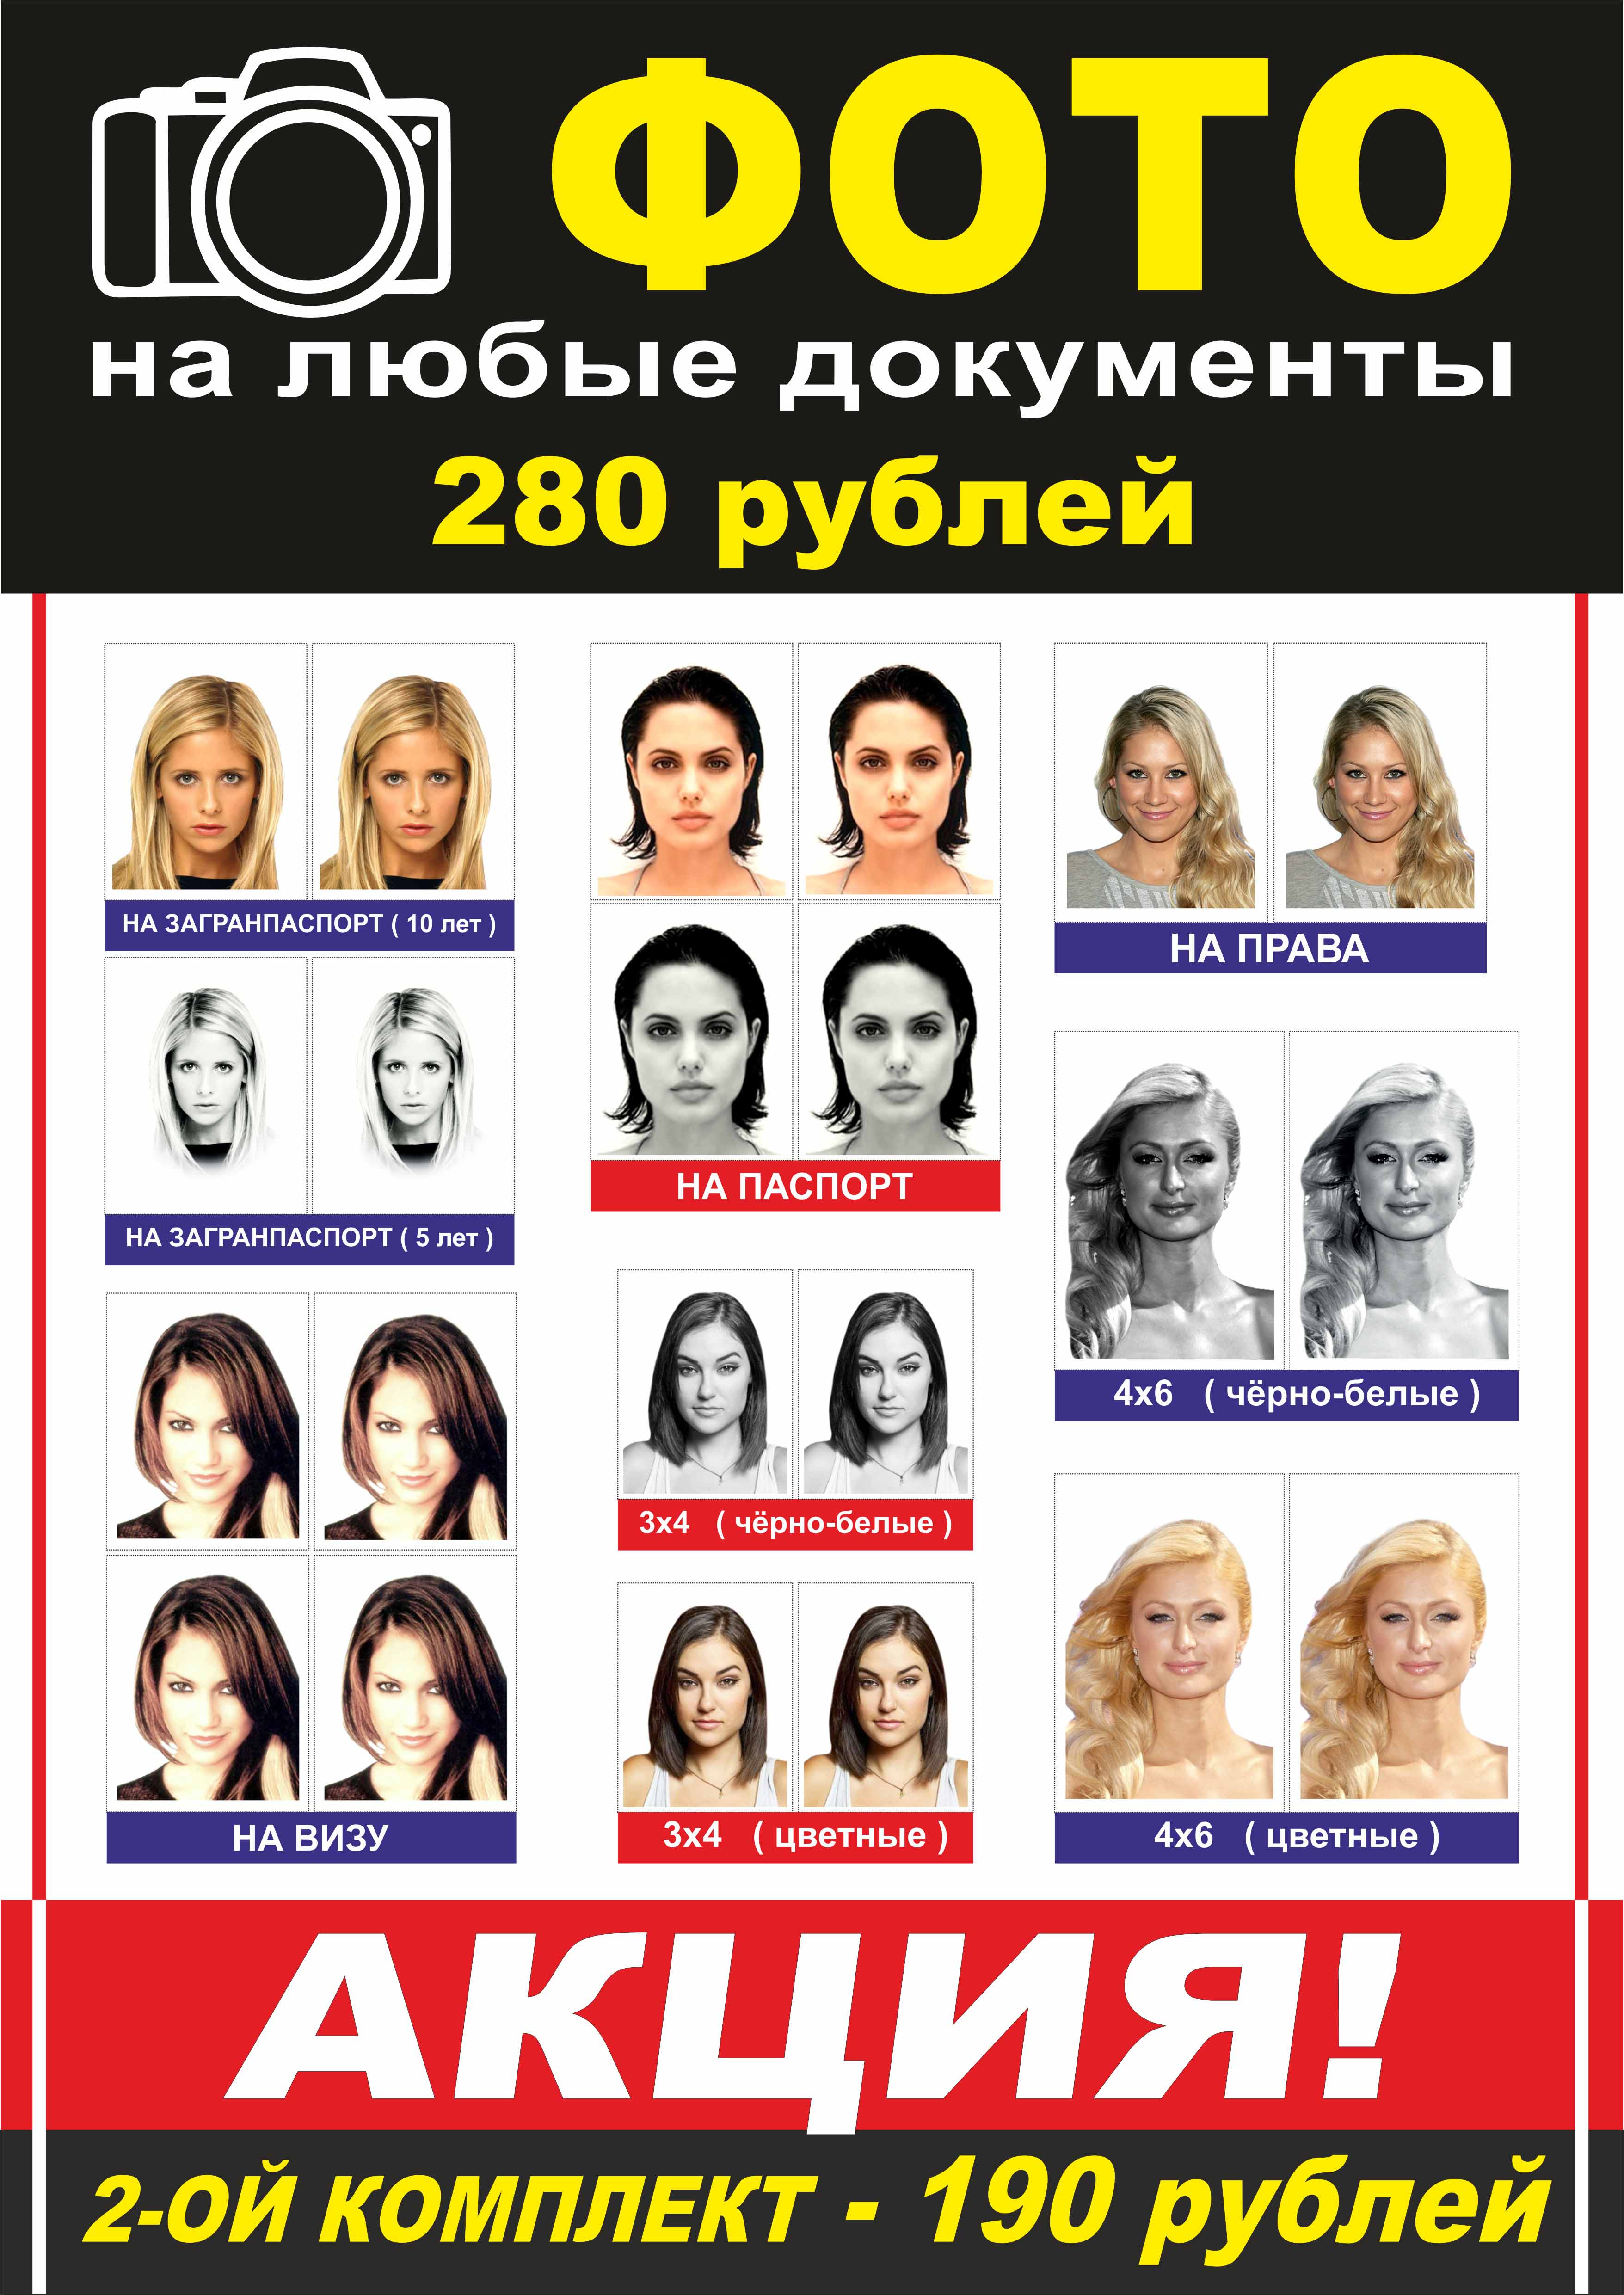 Фото на документы с фотошопом в москве